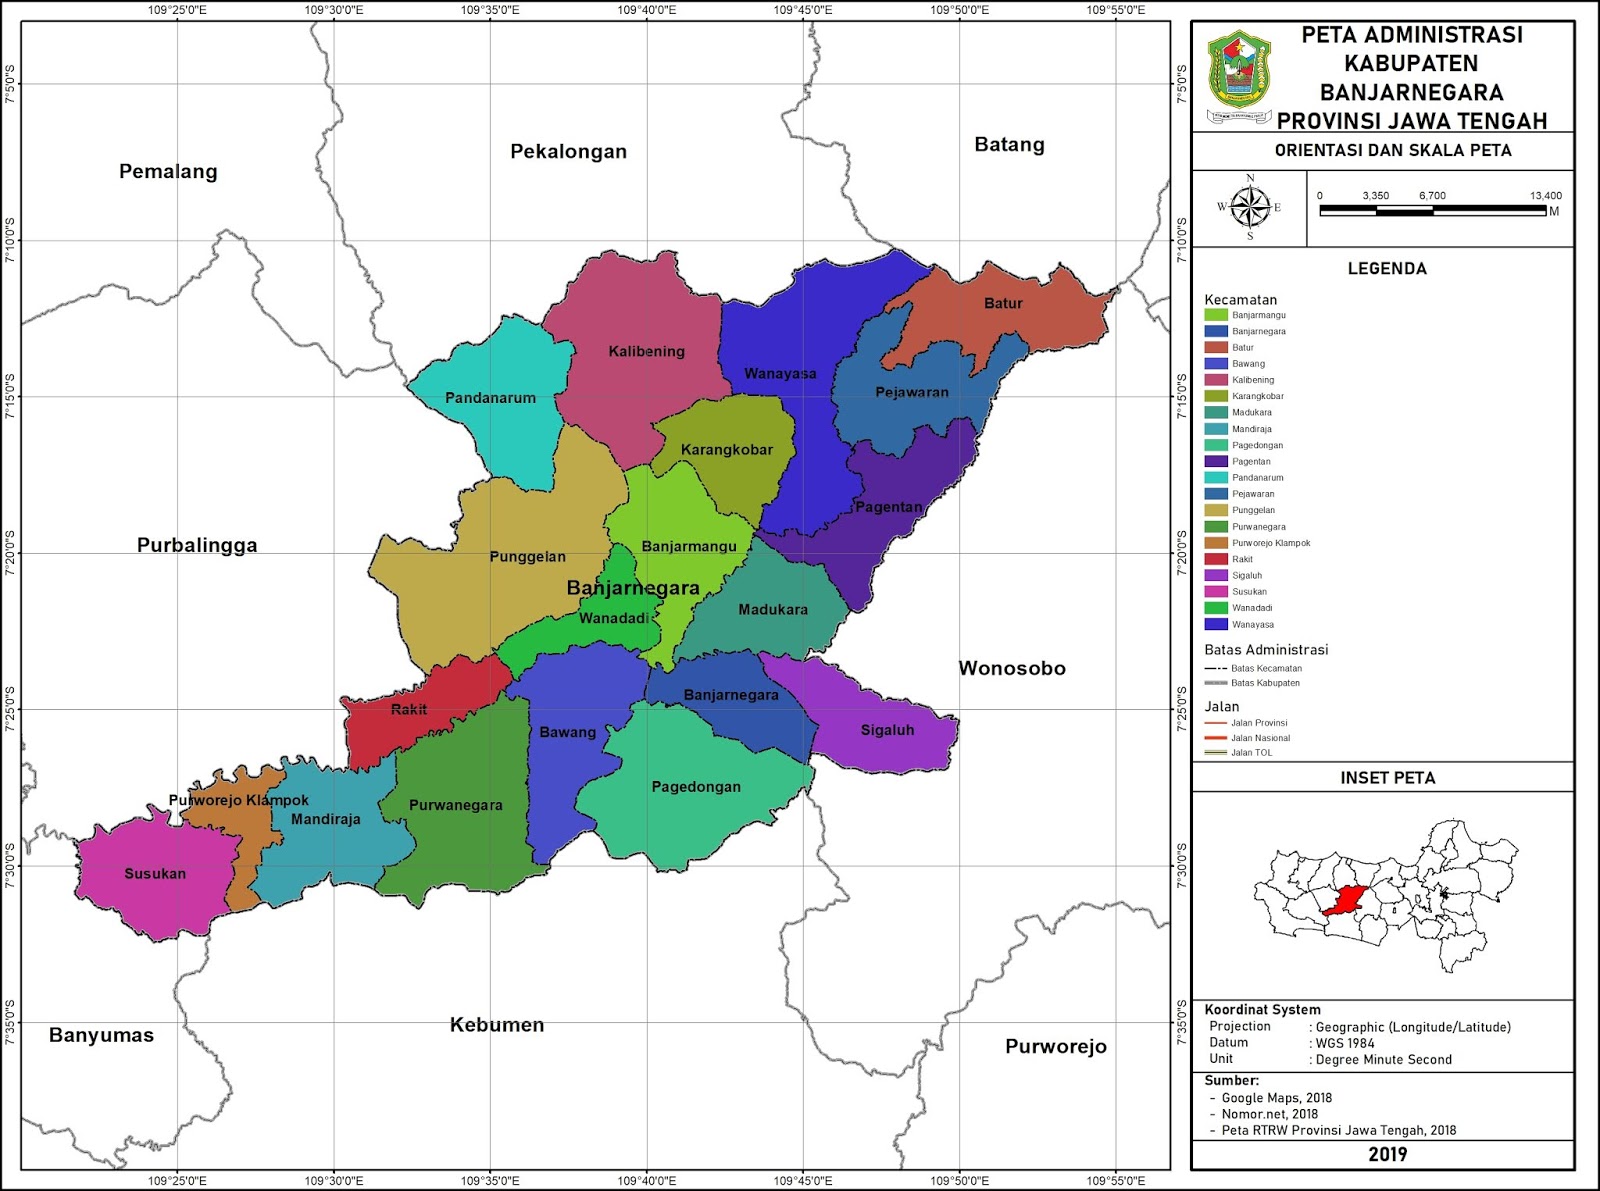 Peta Administrasi Kabupaten Banjarnegara Provinsi Jawa Tengah